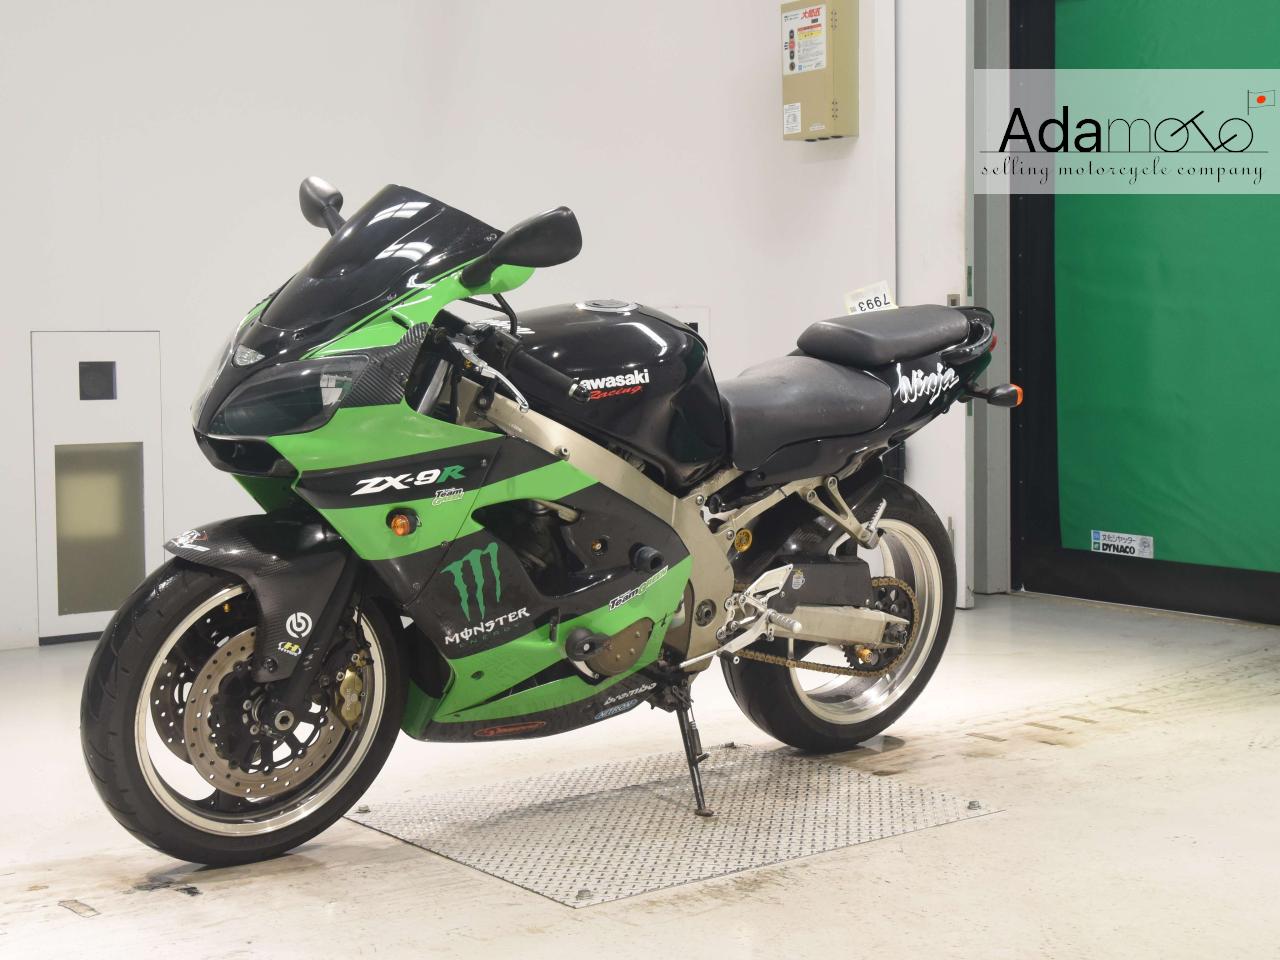 Kawasaki ZX 9R - Adamoto - Motorcycles from Japan